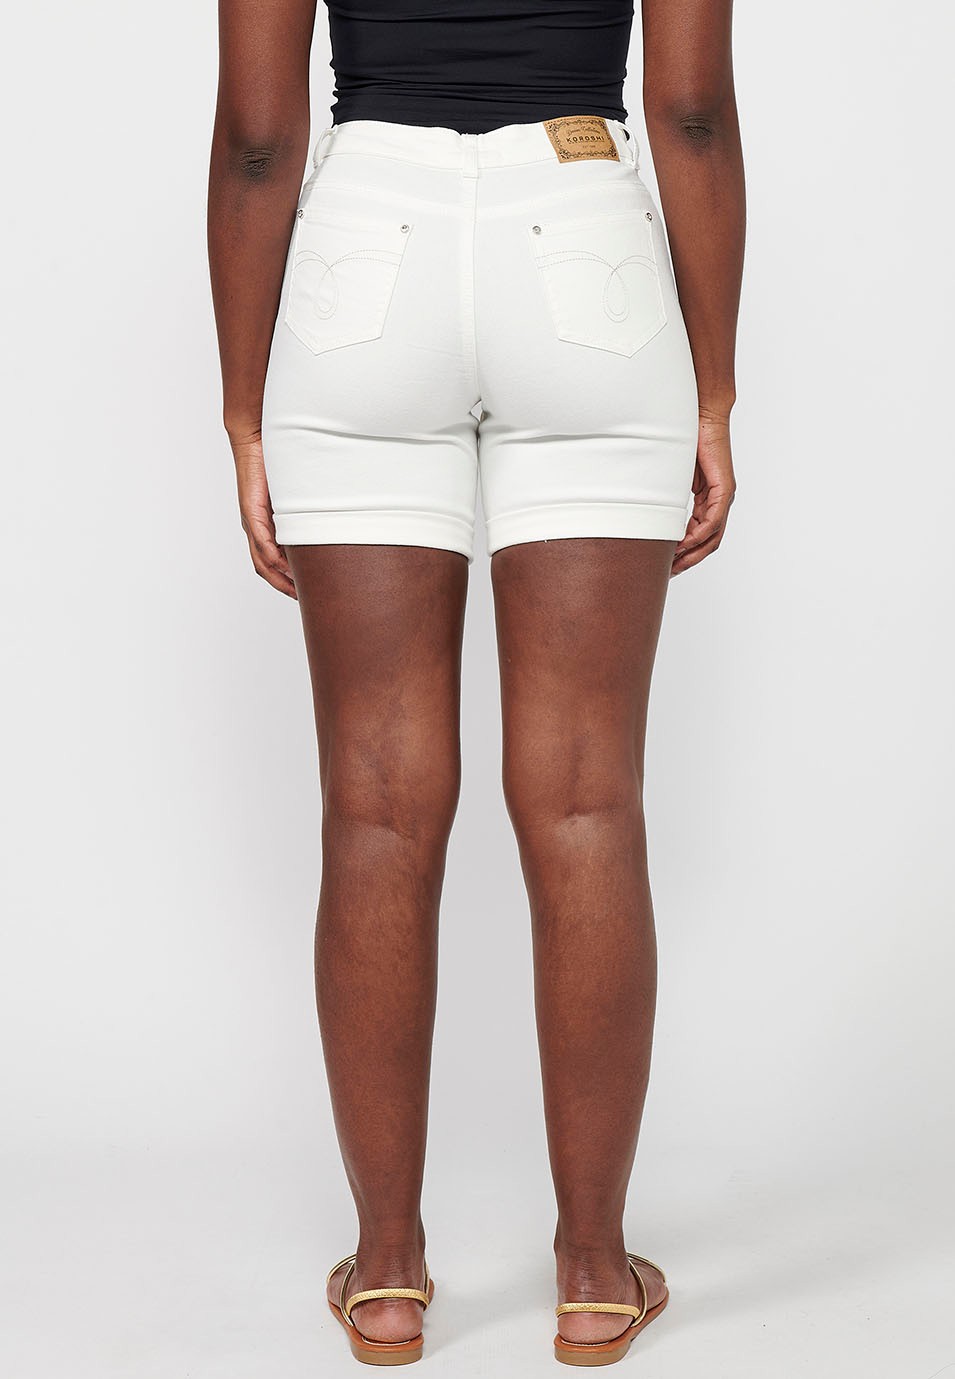 Pantalons curts acabats en volta amb brodat, color blanc per a dona